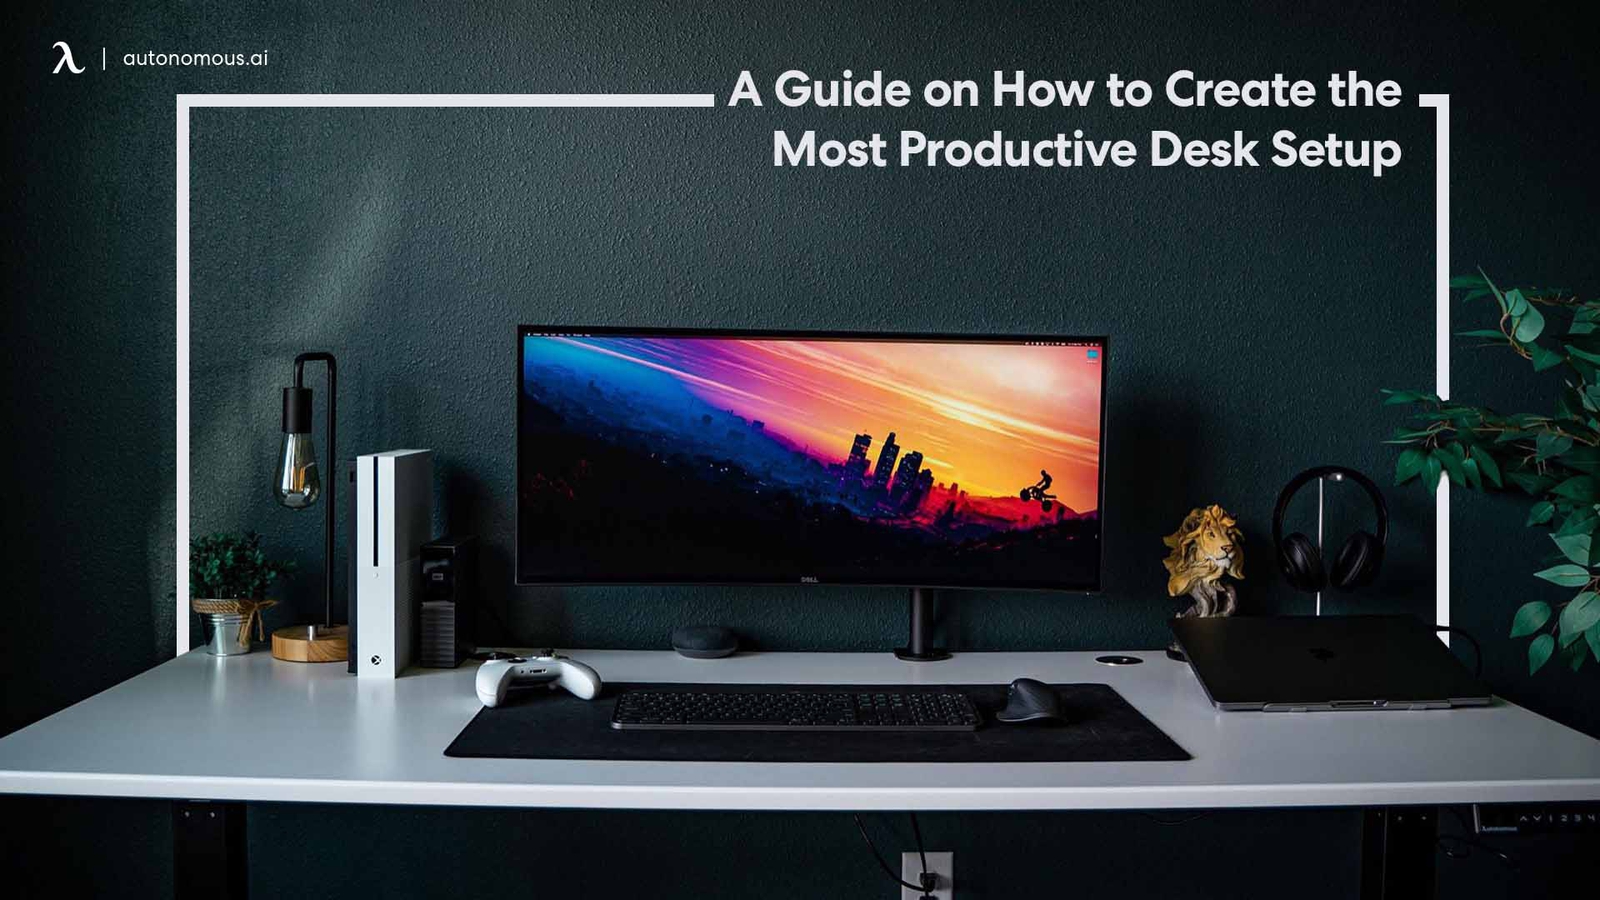 Best Desk Setup For Ivity With 8, Best Work Desk Setup